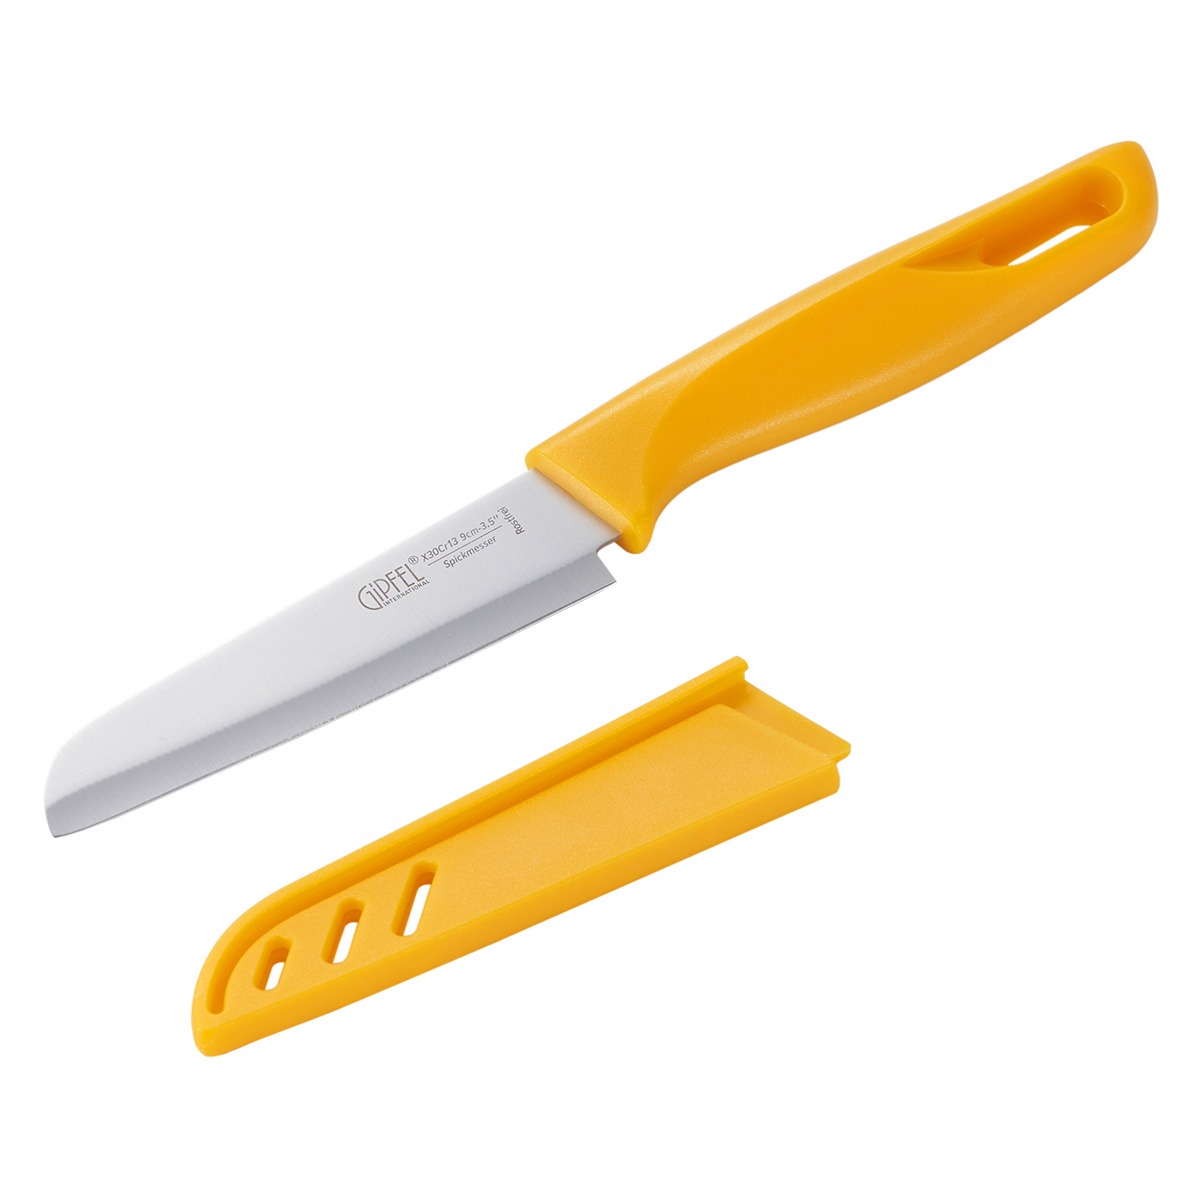 Нож для чистки овощей Gipfel Sorti стальной желтый 9 см нож для чистки овощей gipfel mirella 6840 9 см